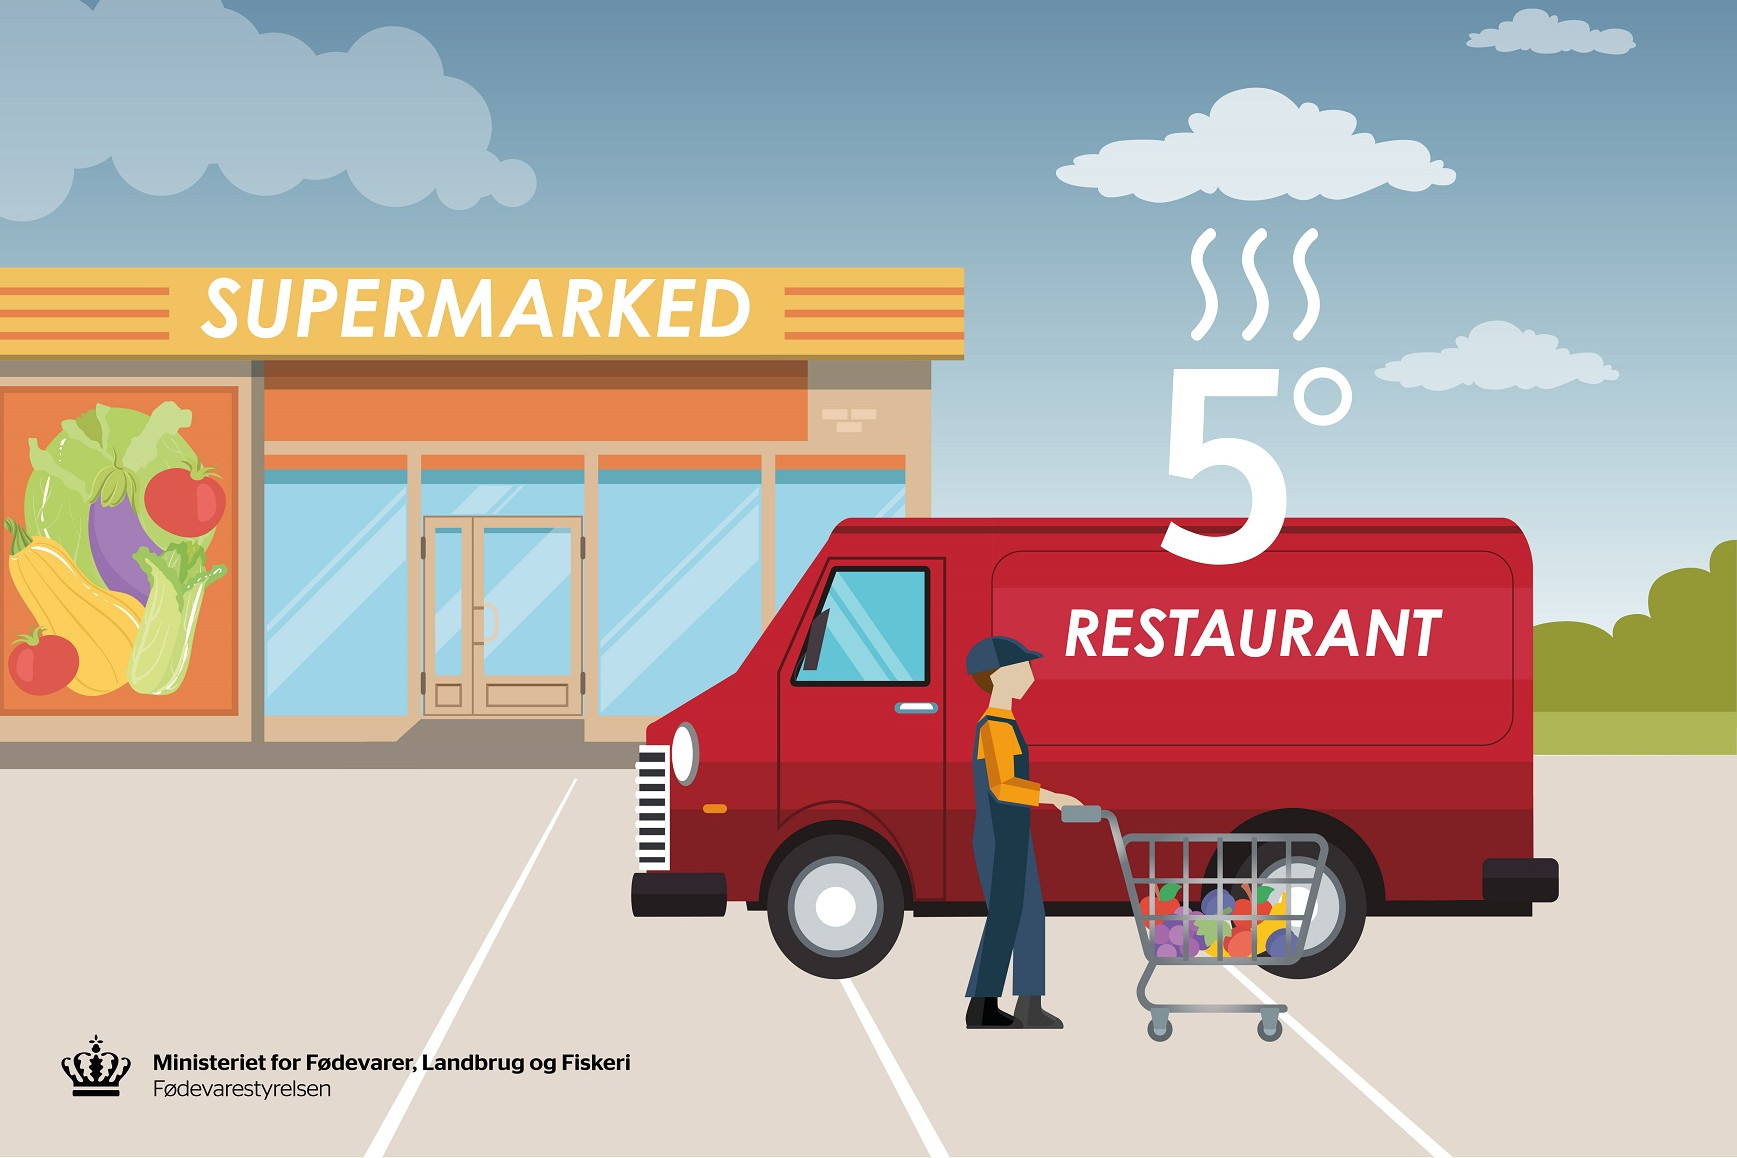 En illustration af et supermarked og en varevogn, der illustrerer mad fragtet ved for høje temperaturer